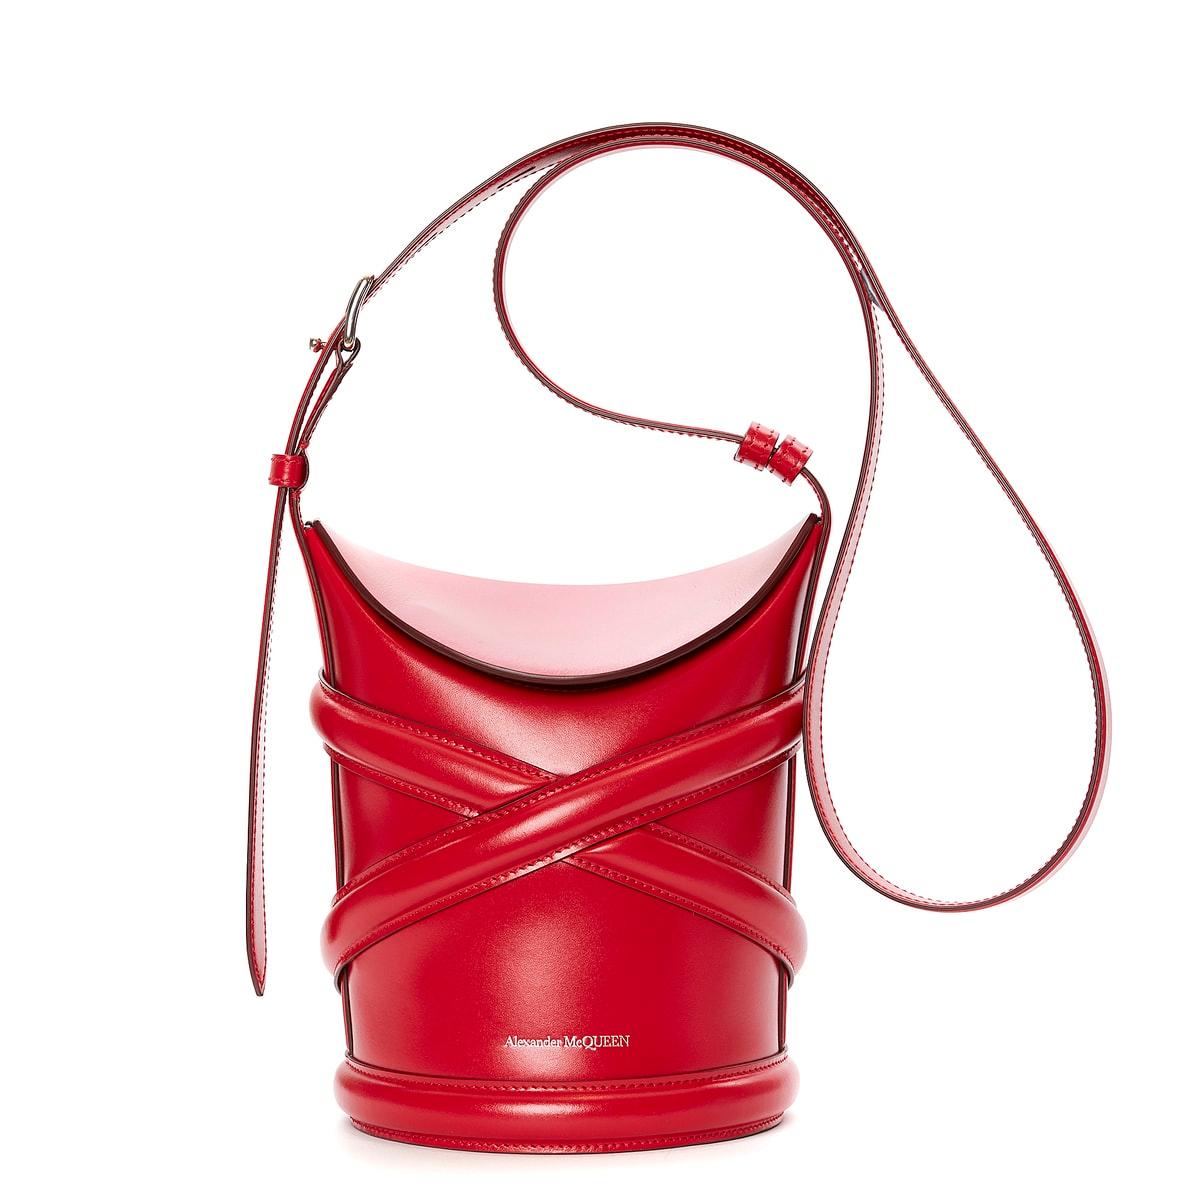 〈アレキサンダー・マックイーン〉のハーネスに着想を得た新作バッグ。豊富なカラー展開 - Slide:4